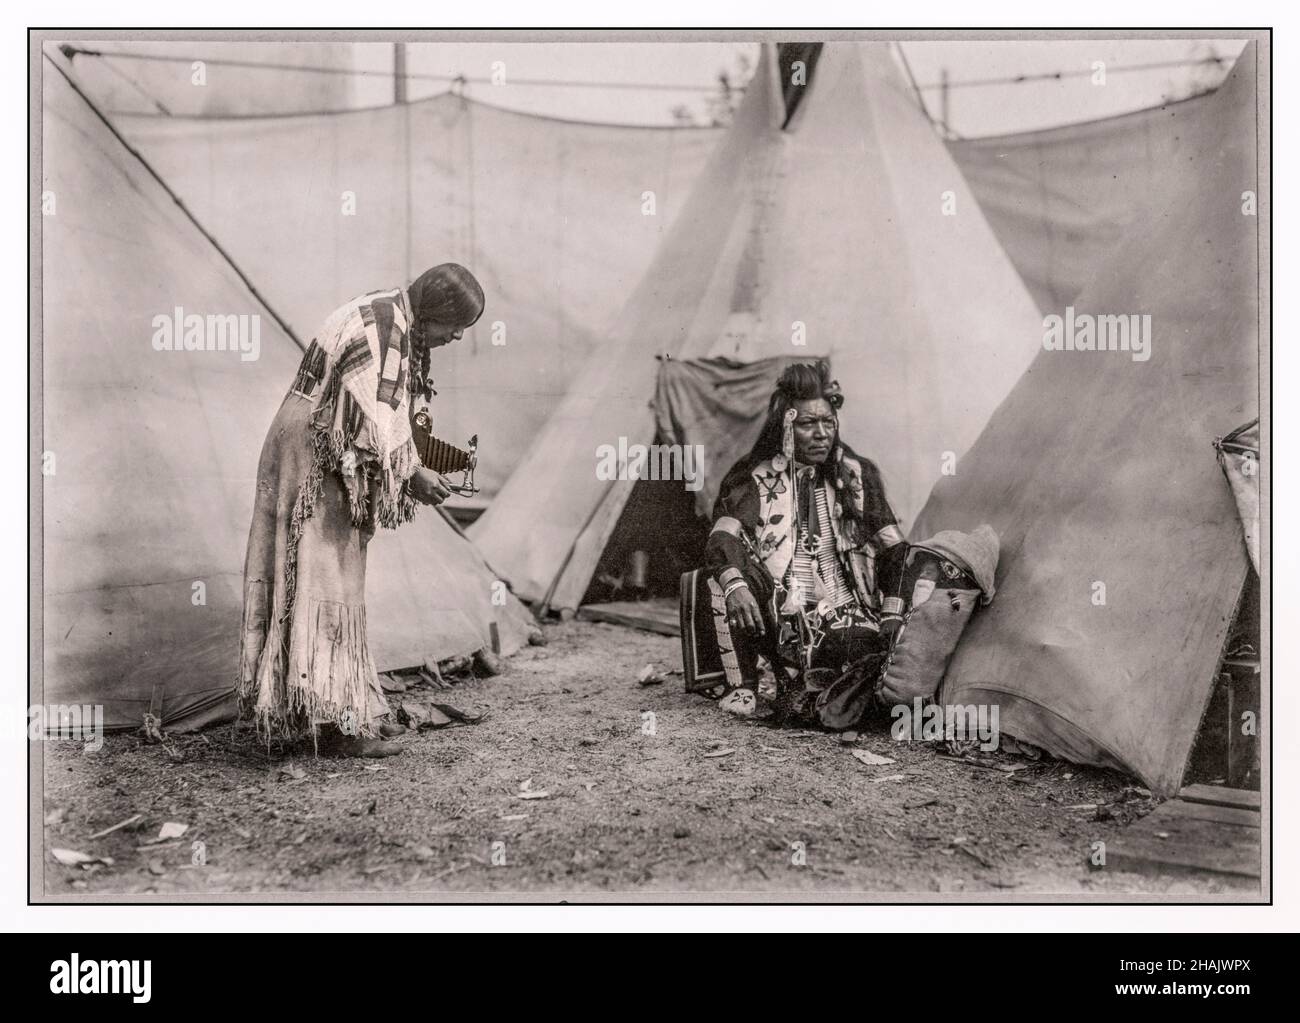 Papoose North American indigena indiana americana donna della regione del Northwest Plateau, scattando una fotografia con una pellicola Kodak mantice mano fotocamera di un uomo e un bambino in una culleboard di fronte a tipis. La gente è probabilmente esecutori in uno spettacolo del selvaggio West o in uno spettacolo laterale. 1911 - Indiani d'America del Nord--Abbigliamento & vestire--Northwest, Pacifico--1910-1920 telecamere--1910-1920 Tipis--1910-1920 stampe in gelatina d'argento--1910-1920. Foto ritratto--1910-1920. Foto Stock